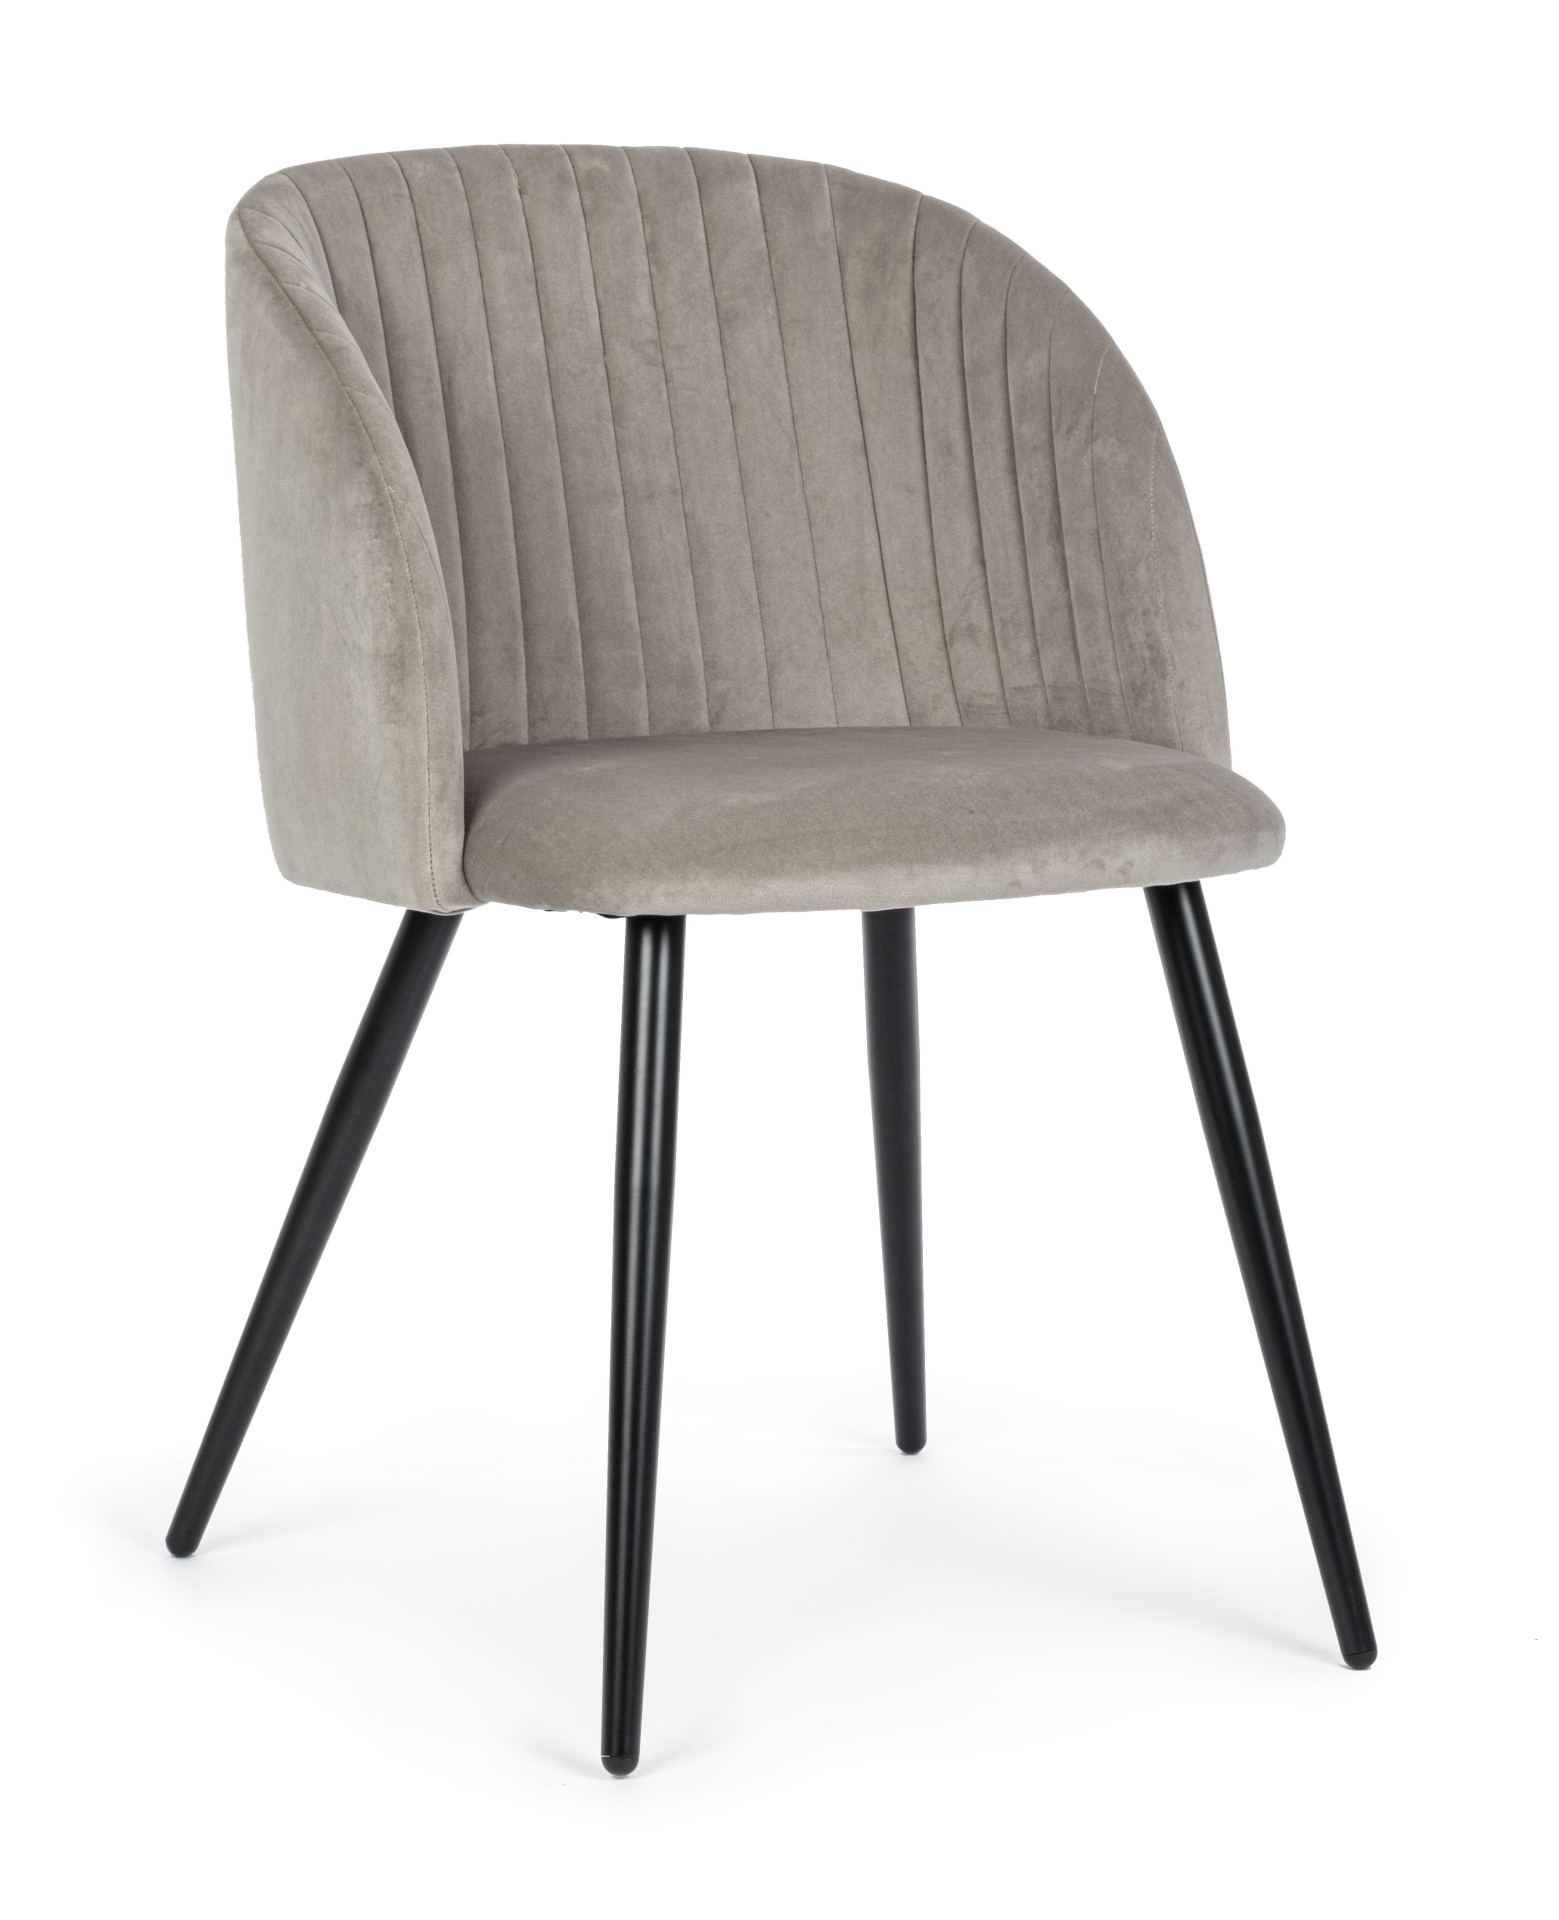 Der Esszimmerstuhl Queen überzeugt mit seinem modernem Design. Gefertigt wurde der Stuhl aus einem Samt-Bezug, welcher einen Taupe Farbton besitzt. Das Gestell ist aus Metall und ist Schwarz. Die Sitzhöhe beträgt 49 cm.